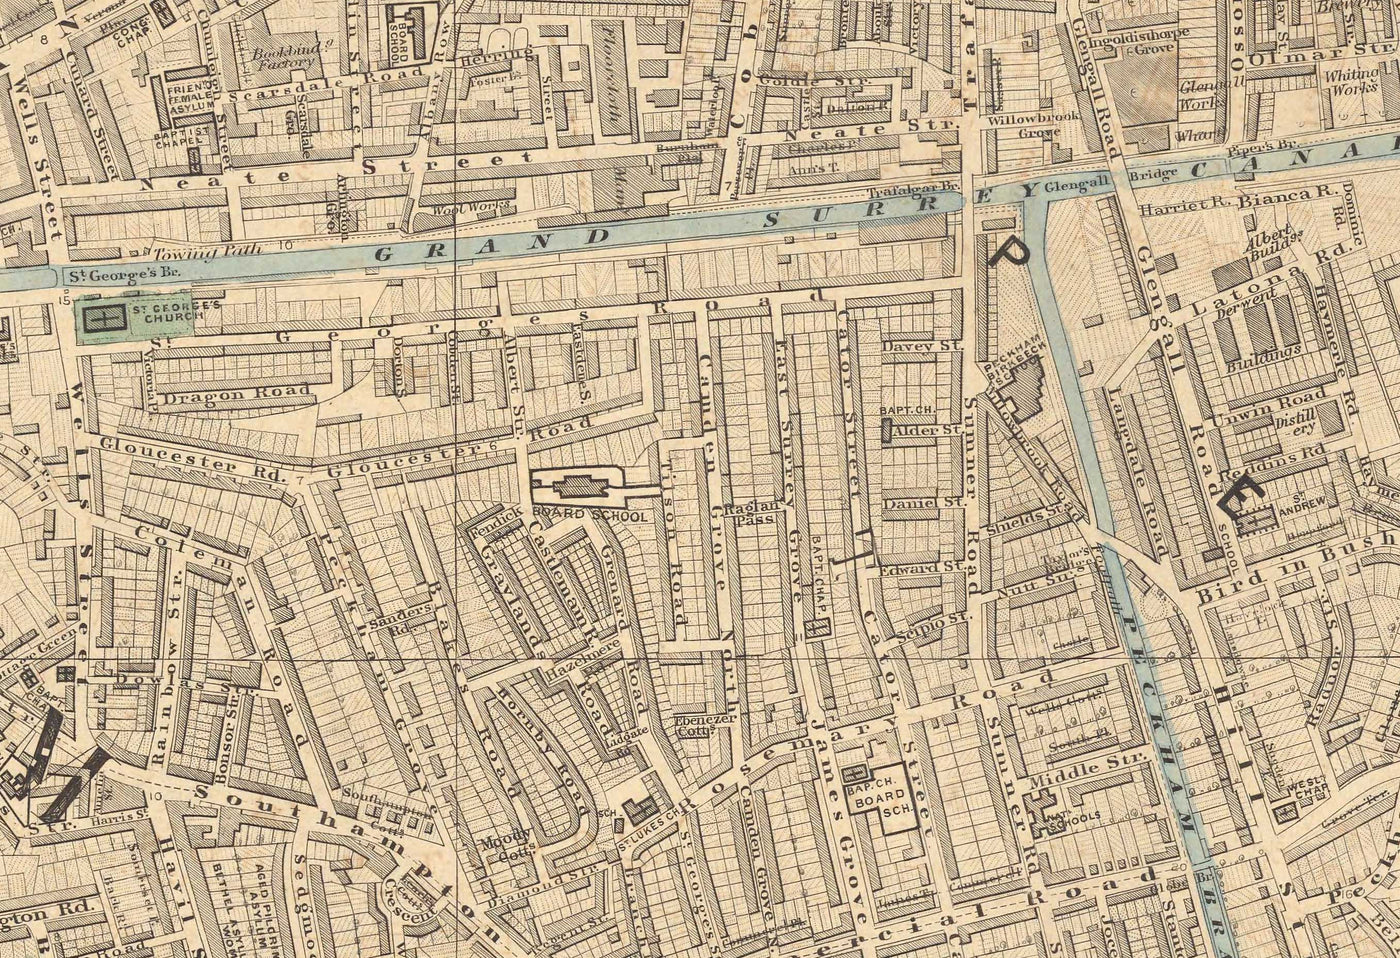 Alte Farbkarte von Süd-London im Jahr 1891 - Camberwell, Peckham, Walworth, Nunhead, Old Kent Road - SE5, SE17, SE15, SE1, SE16